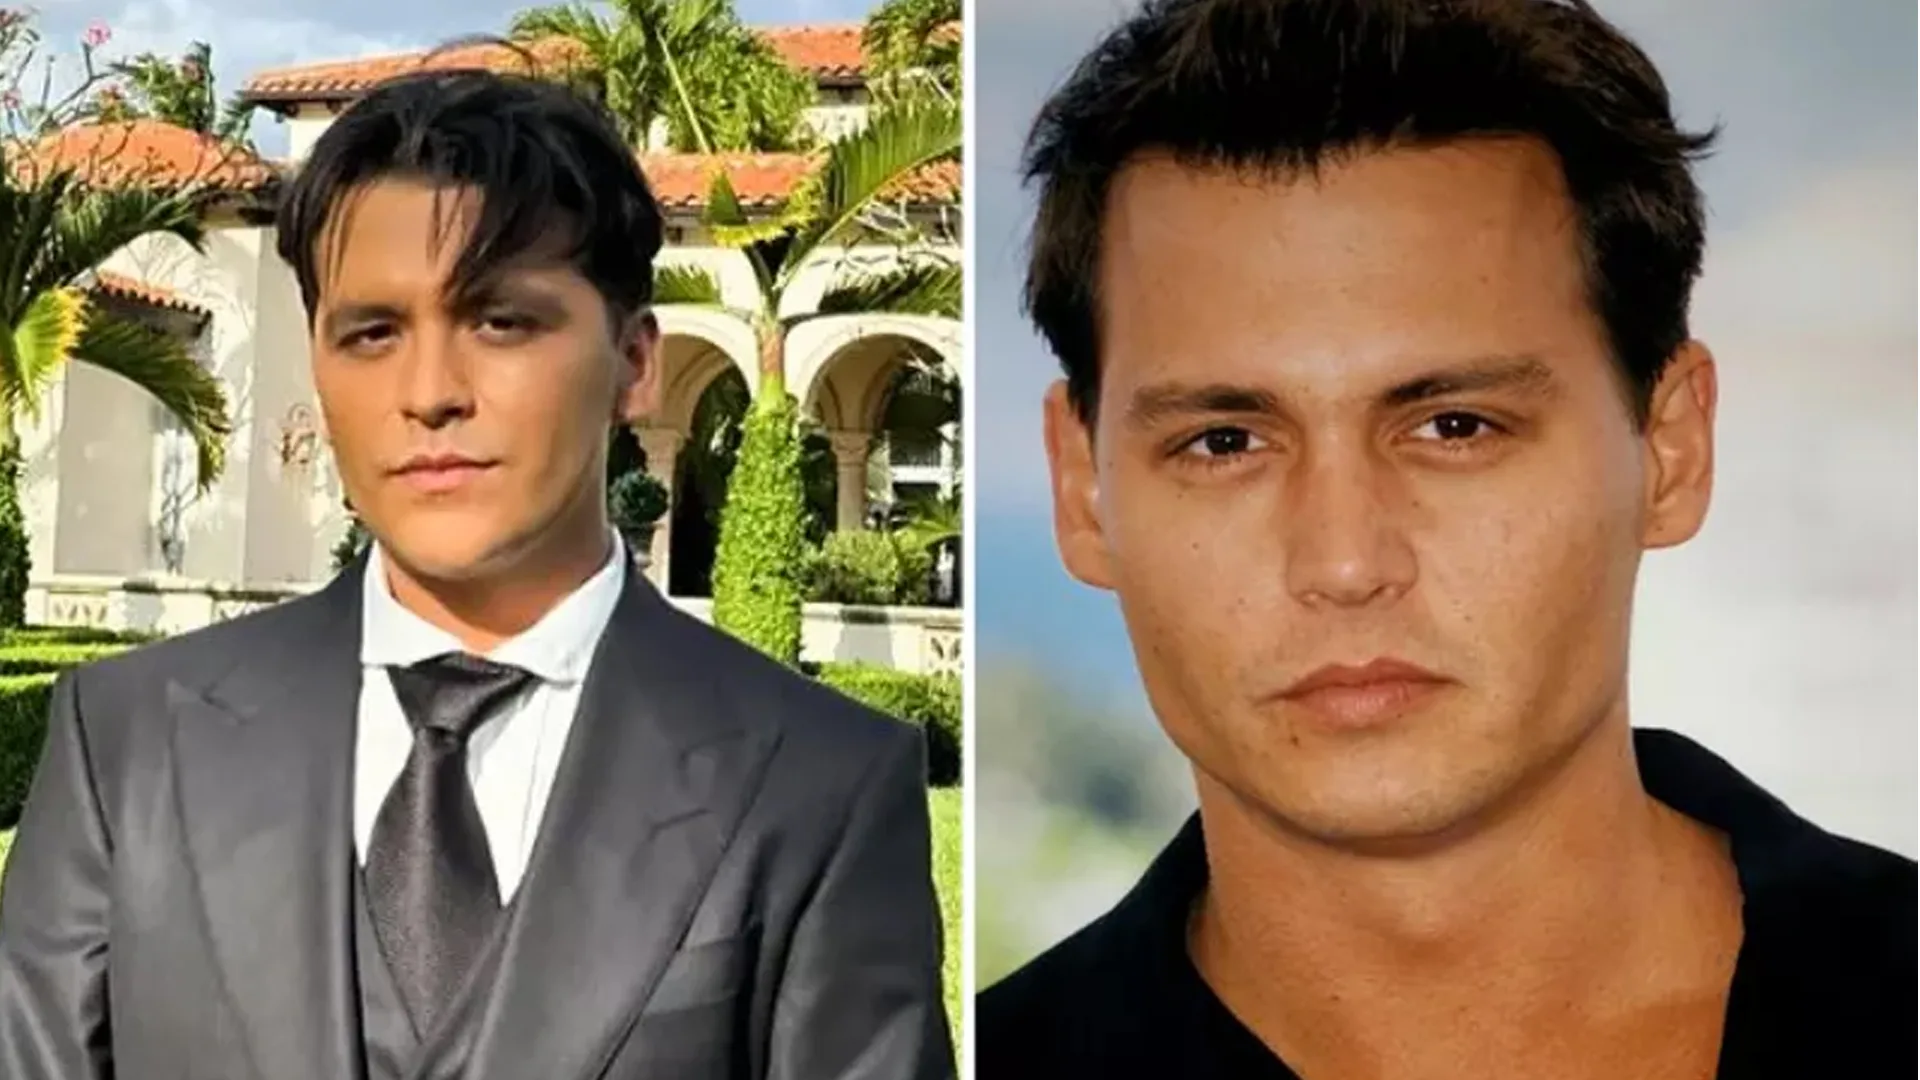 Christian y Johnny Depp parecidos